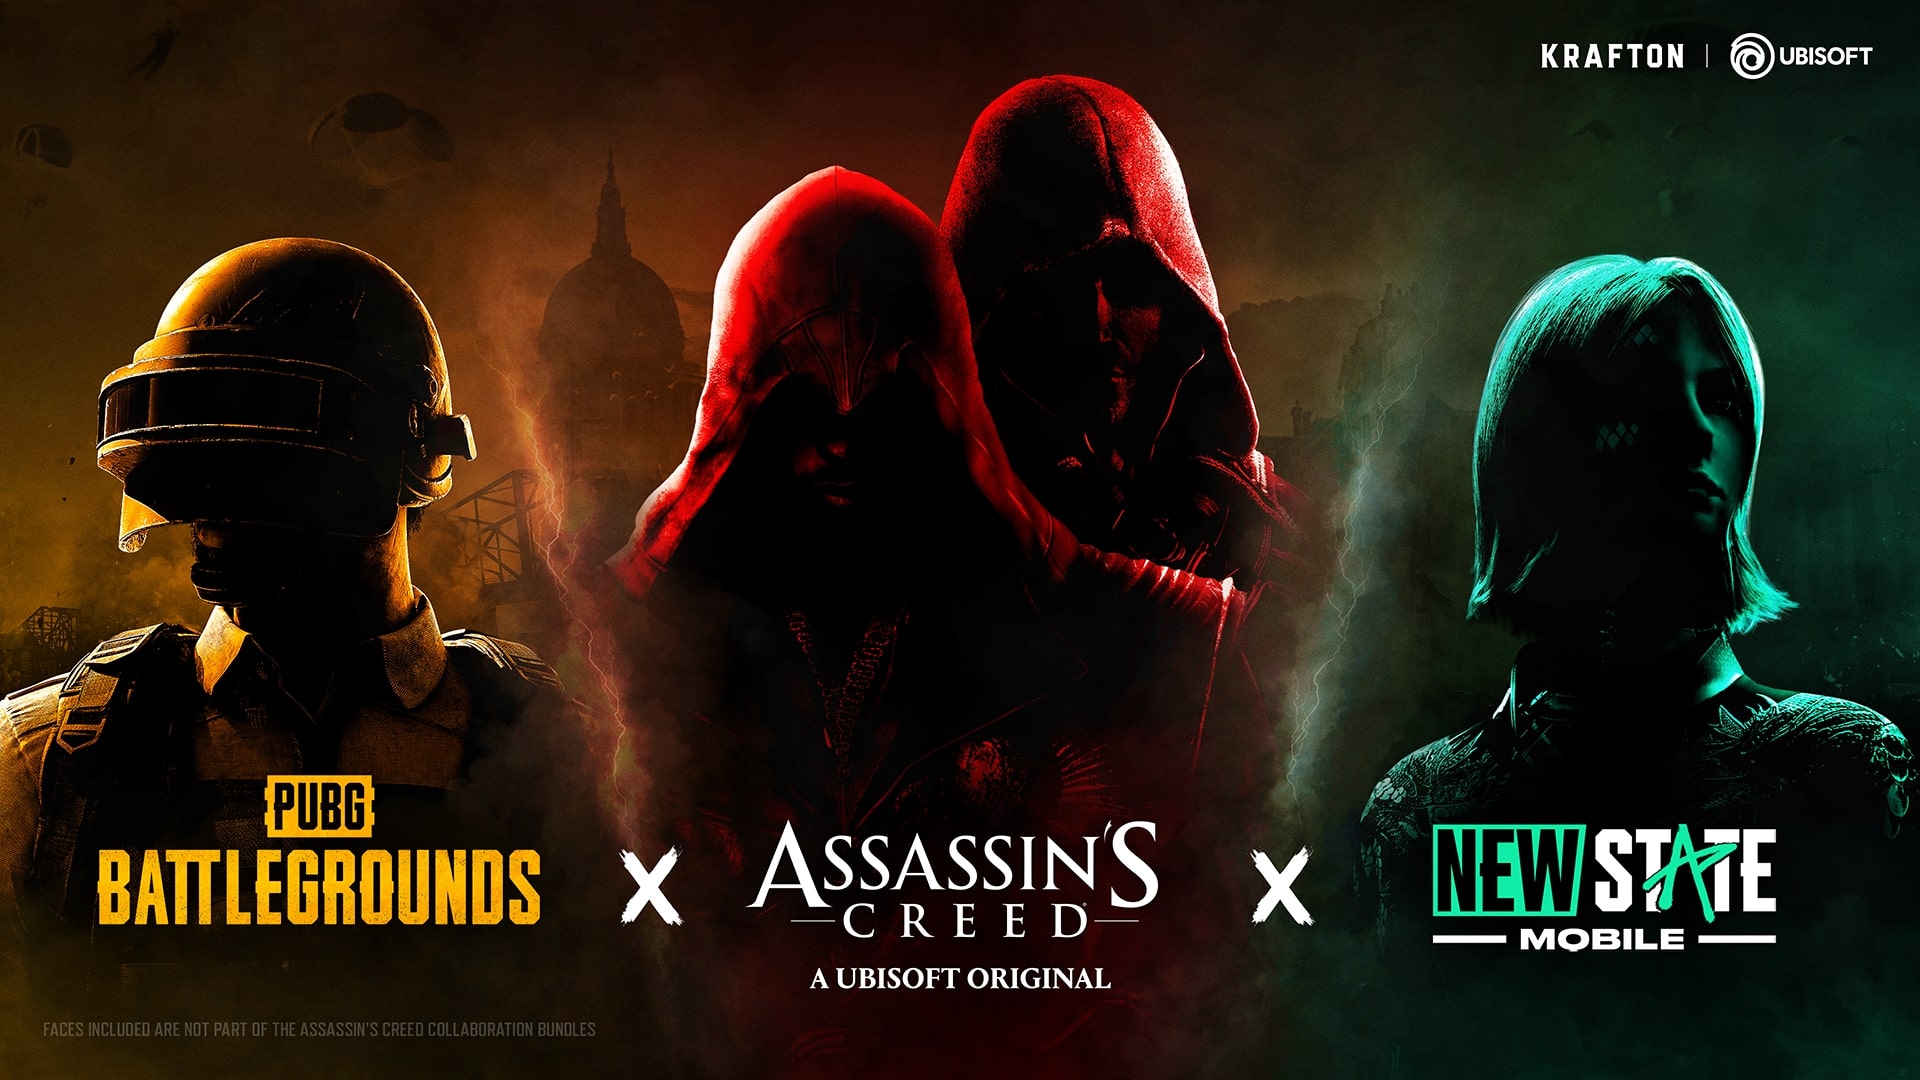 PUBG-Battlegrounds-Assassins-Creed-Crossover-Official-Artwork-GamersRD